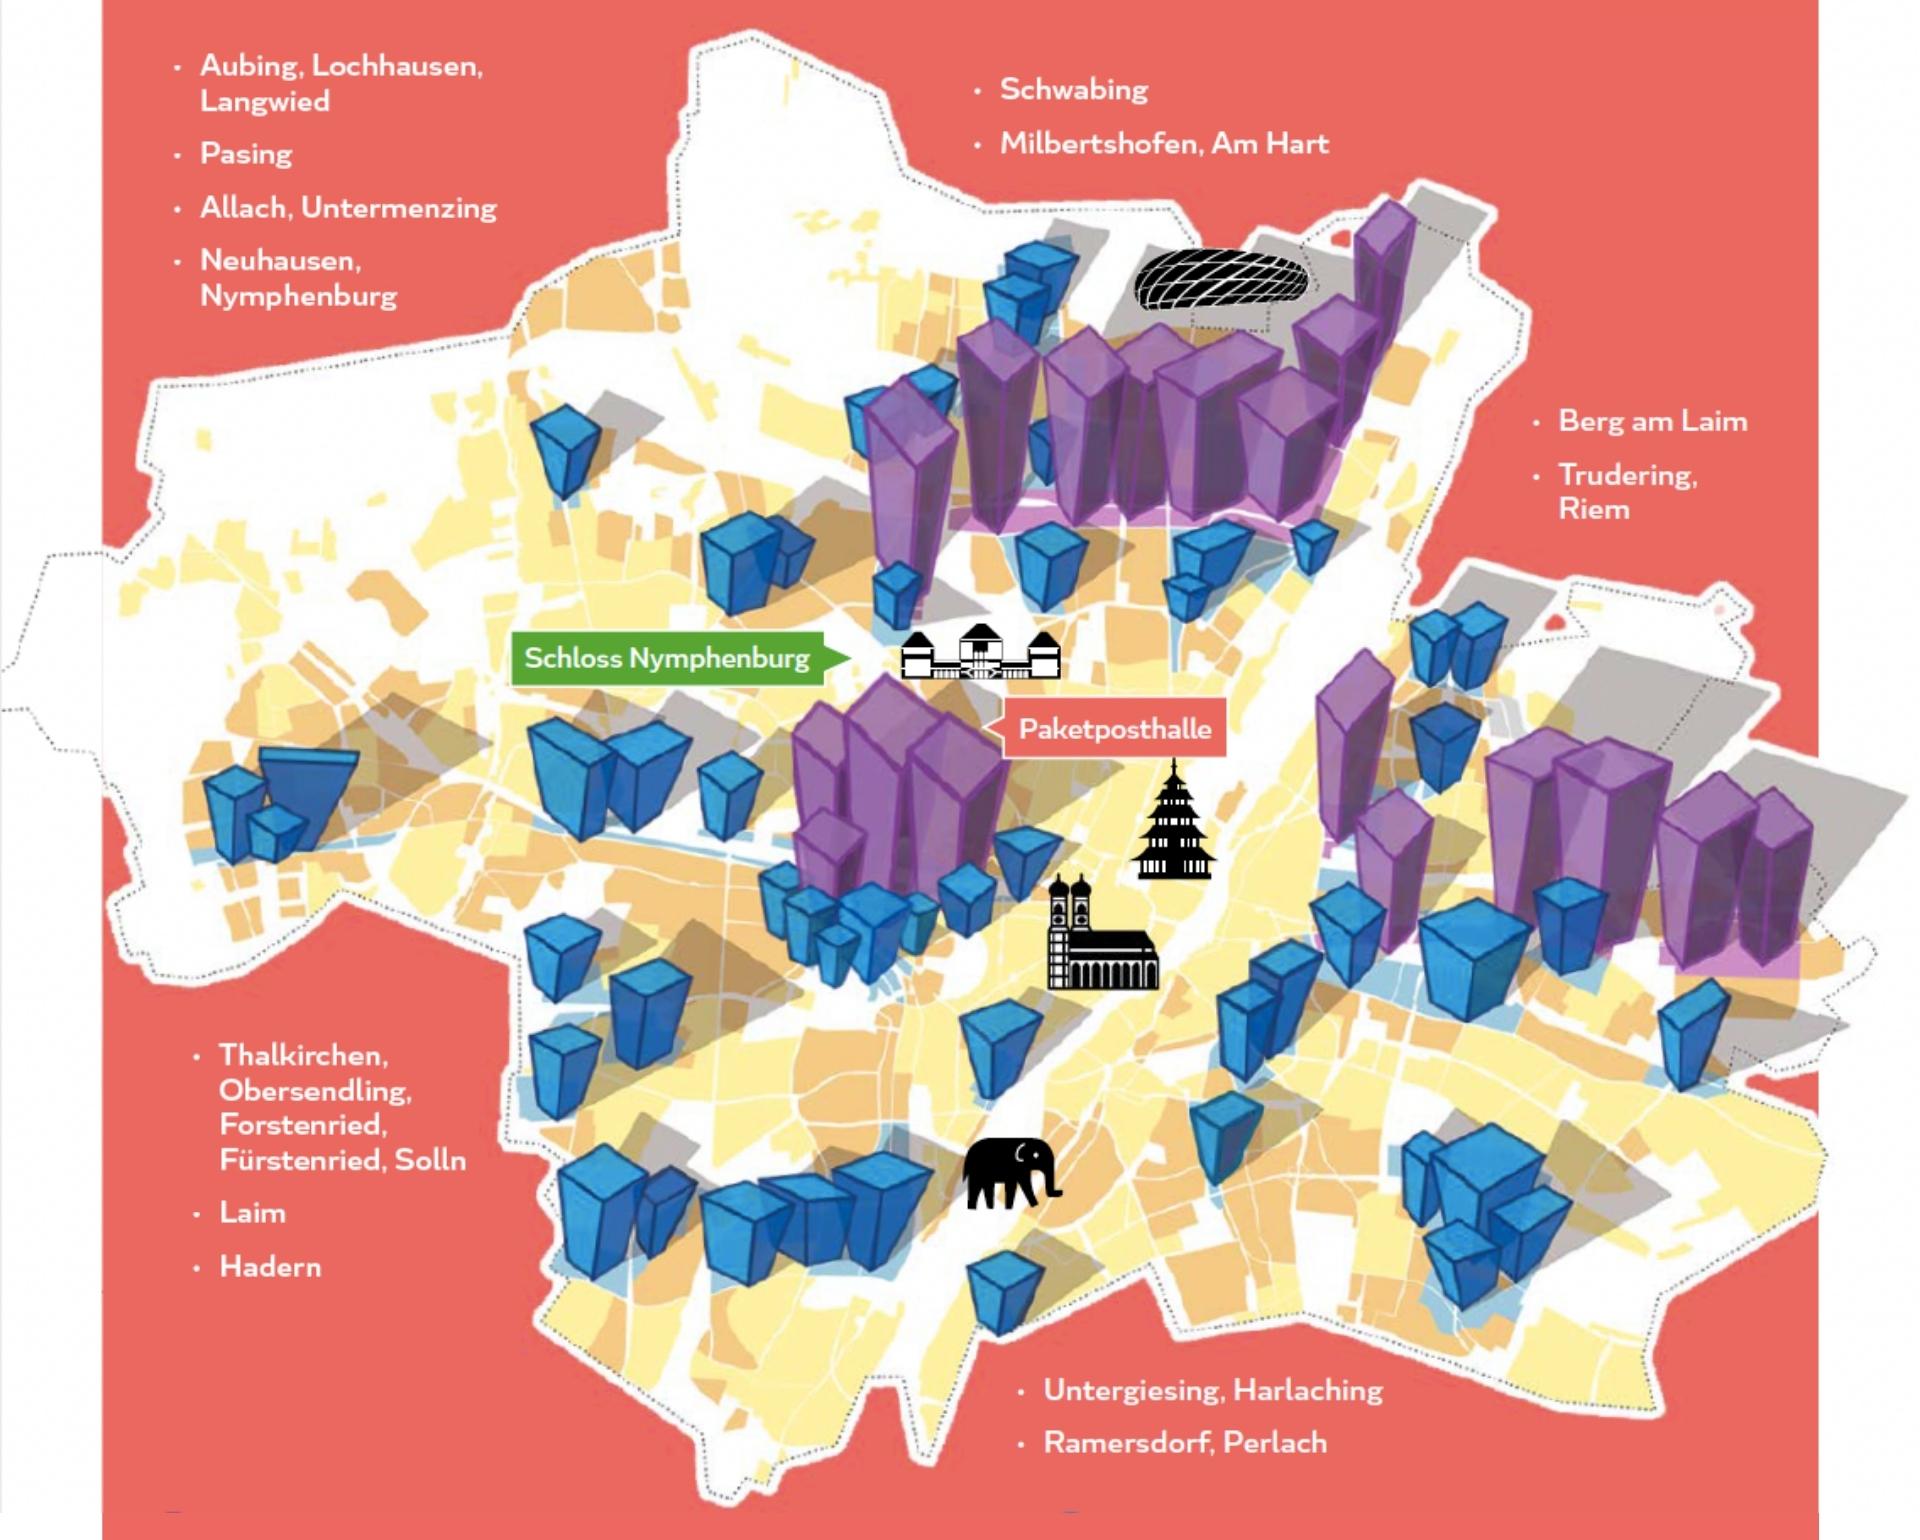 Auf dem Bild sieht man eine gezeichnete Landkarte der Stadt München. Es sind blaue und lilafarbene Häuser an den Stellen eingemalt, an denen die Hochhäuser gebaut werden sollen. Dies wollen wir als Hochhaus Gegner verhindern.